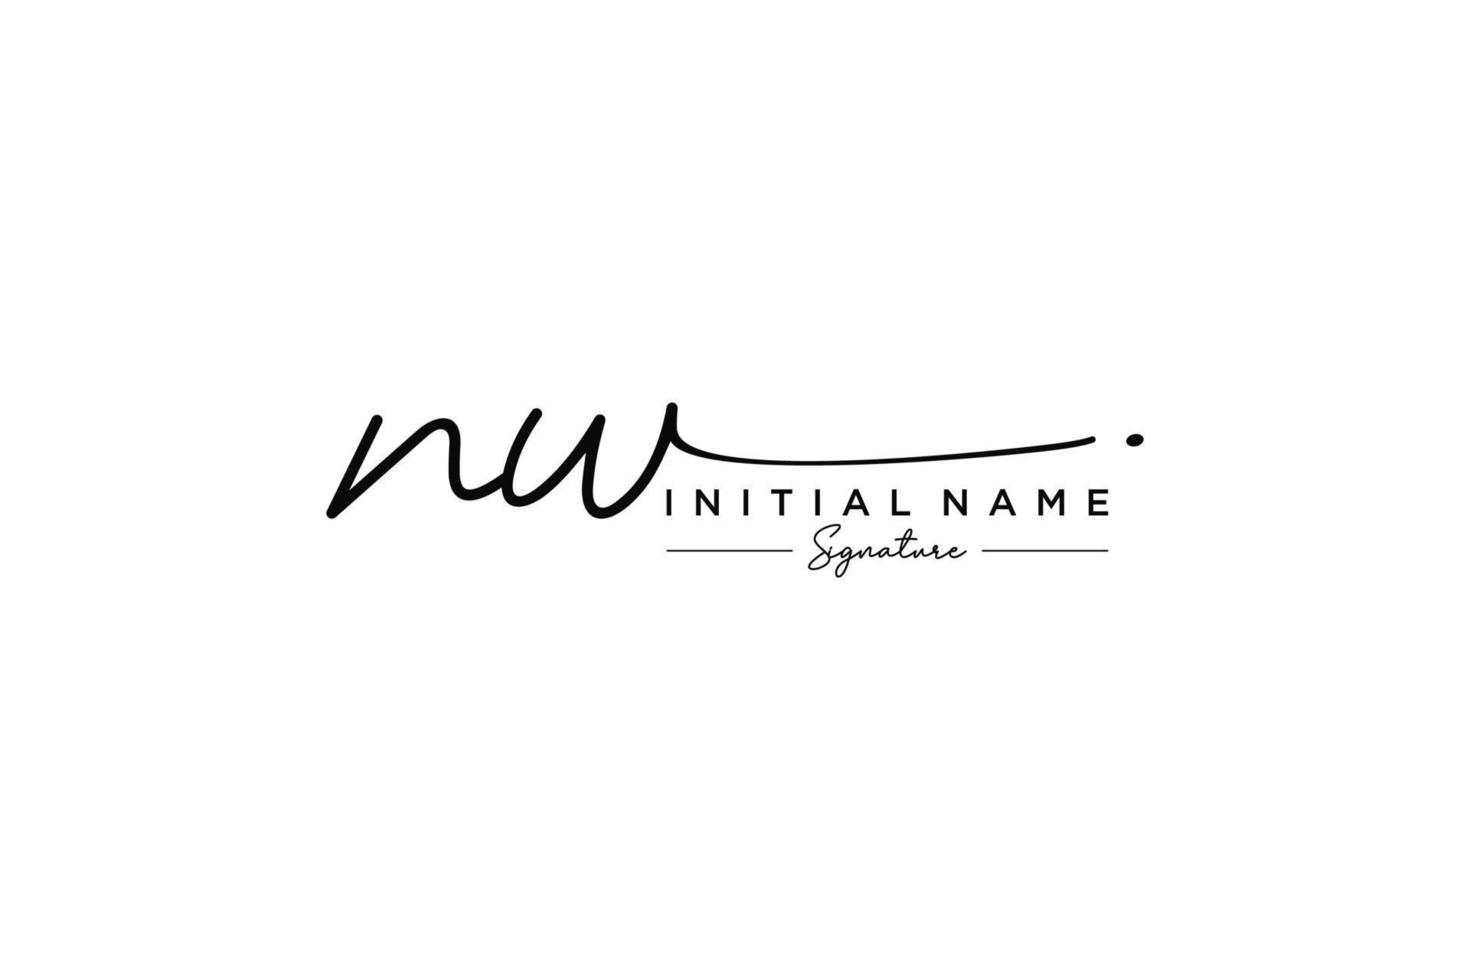 vecteur de modèle de logo de signature nw initial. illustration vectorielle de calligraphie dessinée à la main.